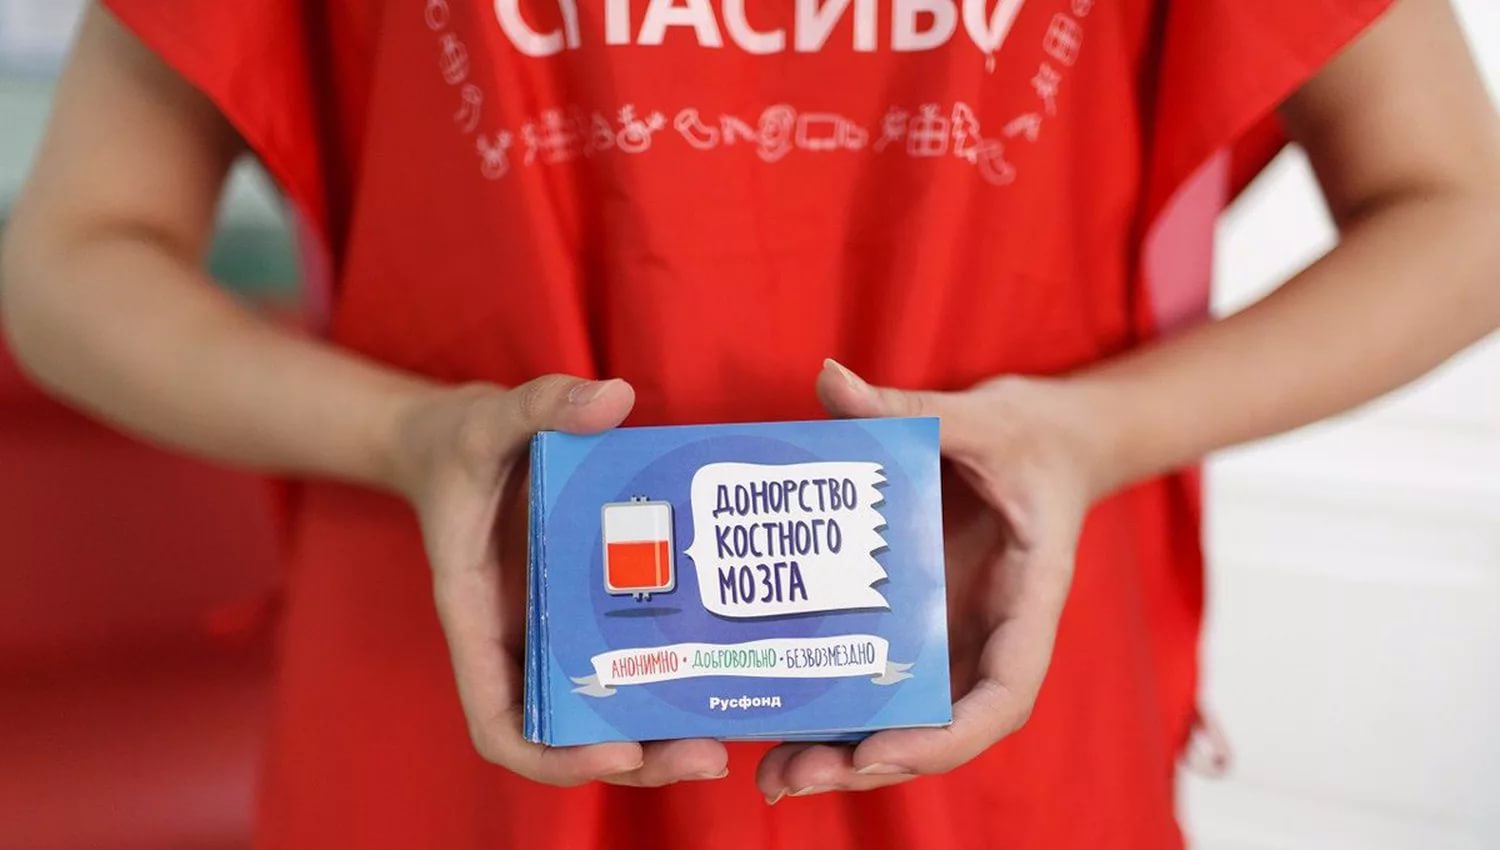 Количество доноров костного мозга в России за год увеличилось в 2,6 раза